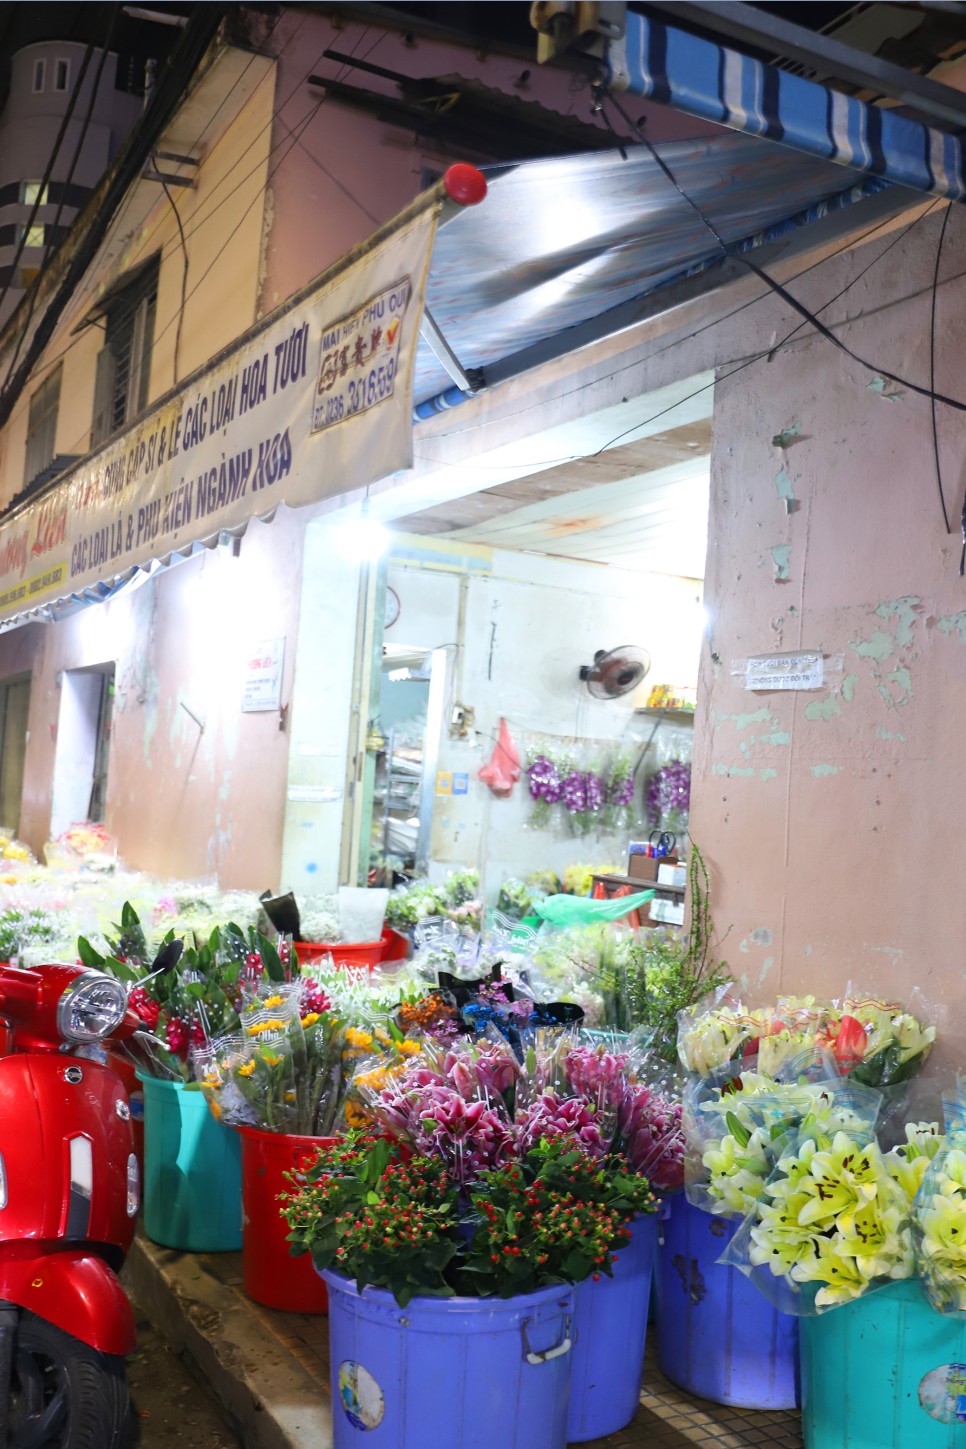 베트남 다낭 로컬 맛집 리스트 2 : 냐벱 한시장 + 코바 쌀국수 메뉴와 할인방법